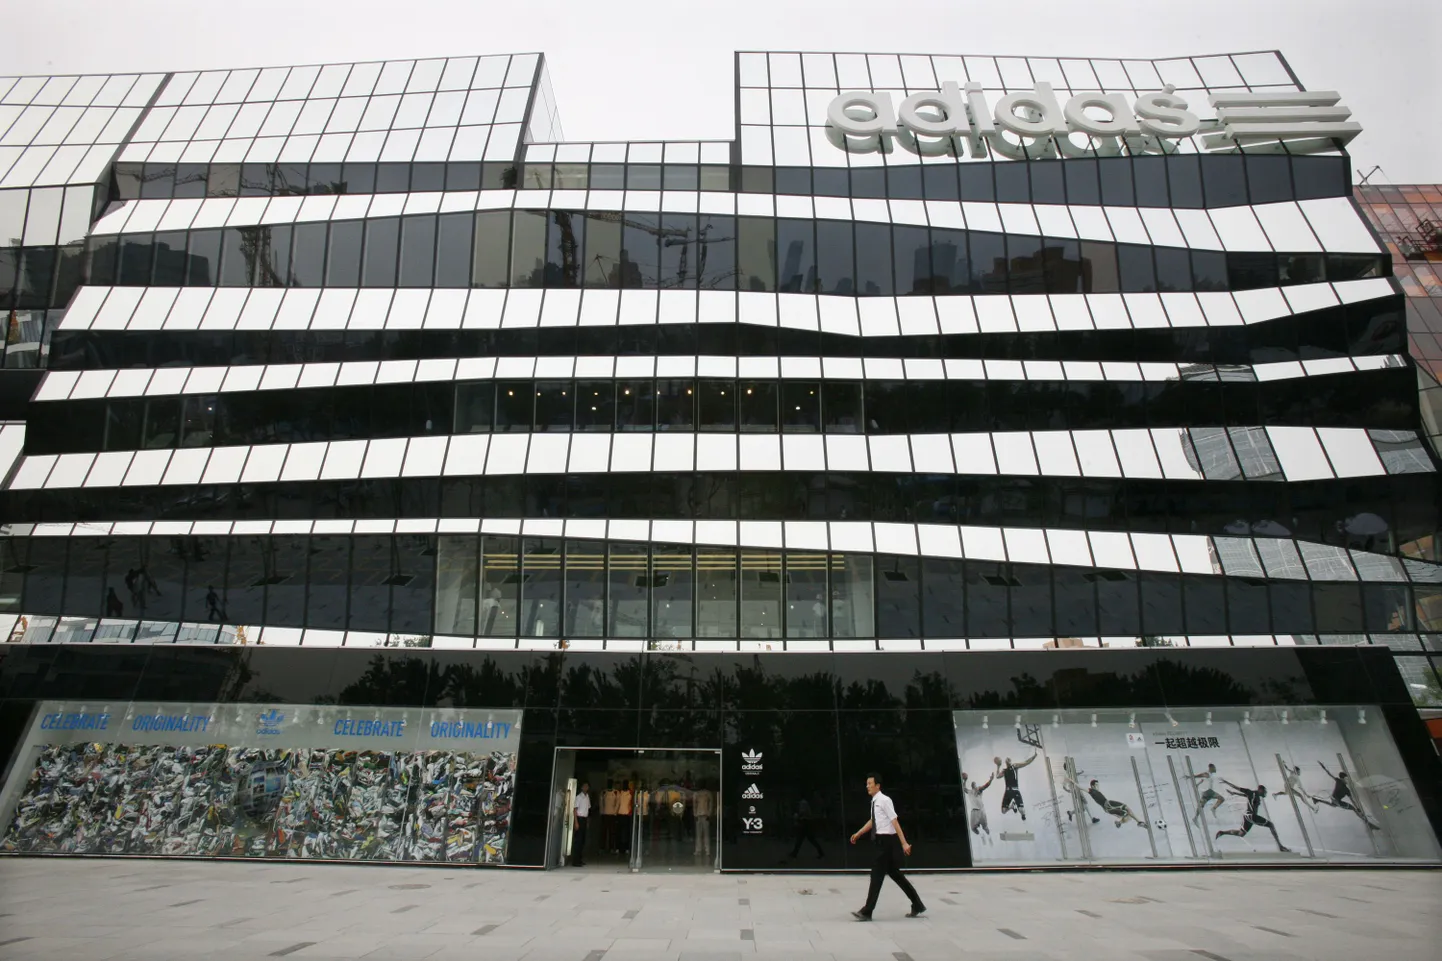 Pekingis asuv maailma suurim Adidase kaubanduskeskus Adidas Brand Center avas uksed tänavu juulis.